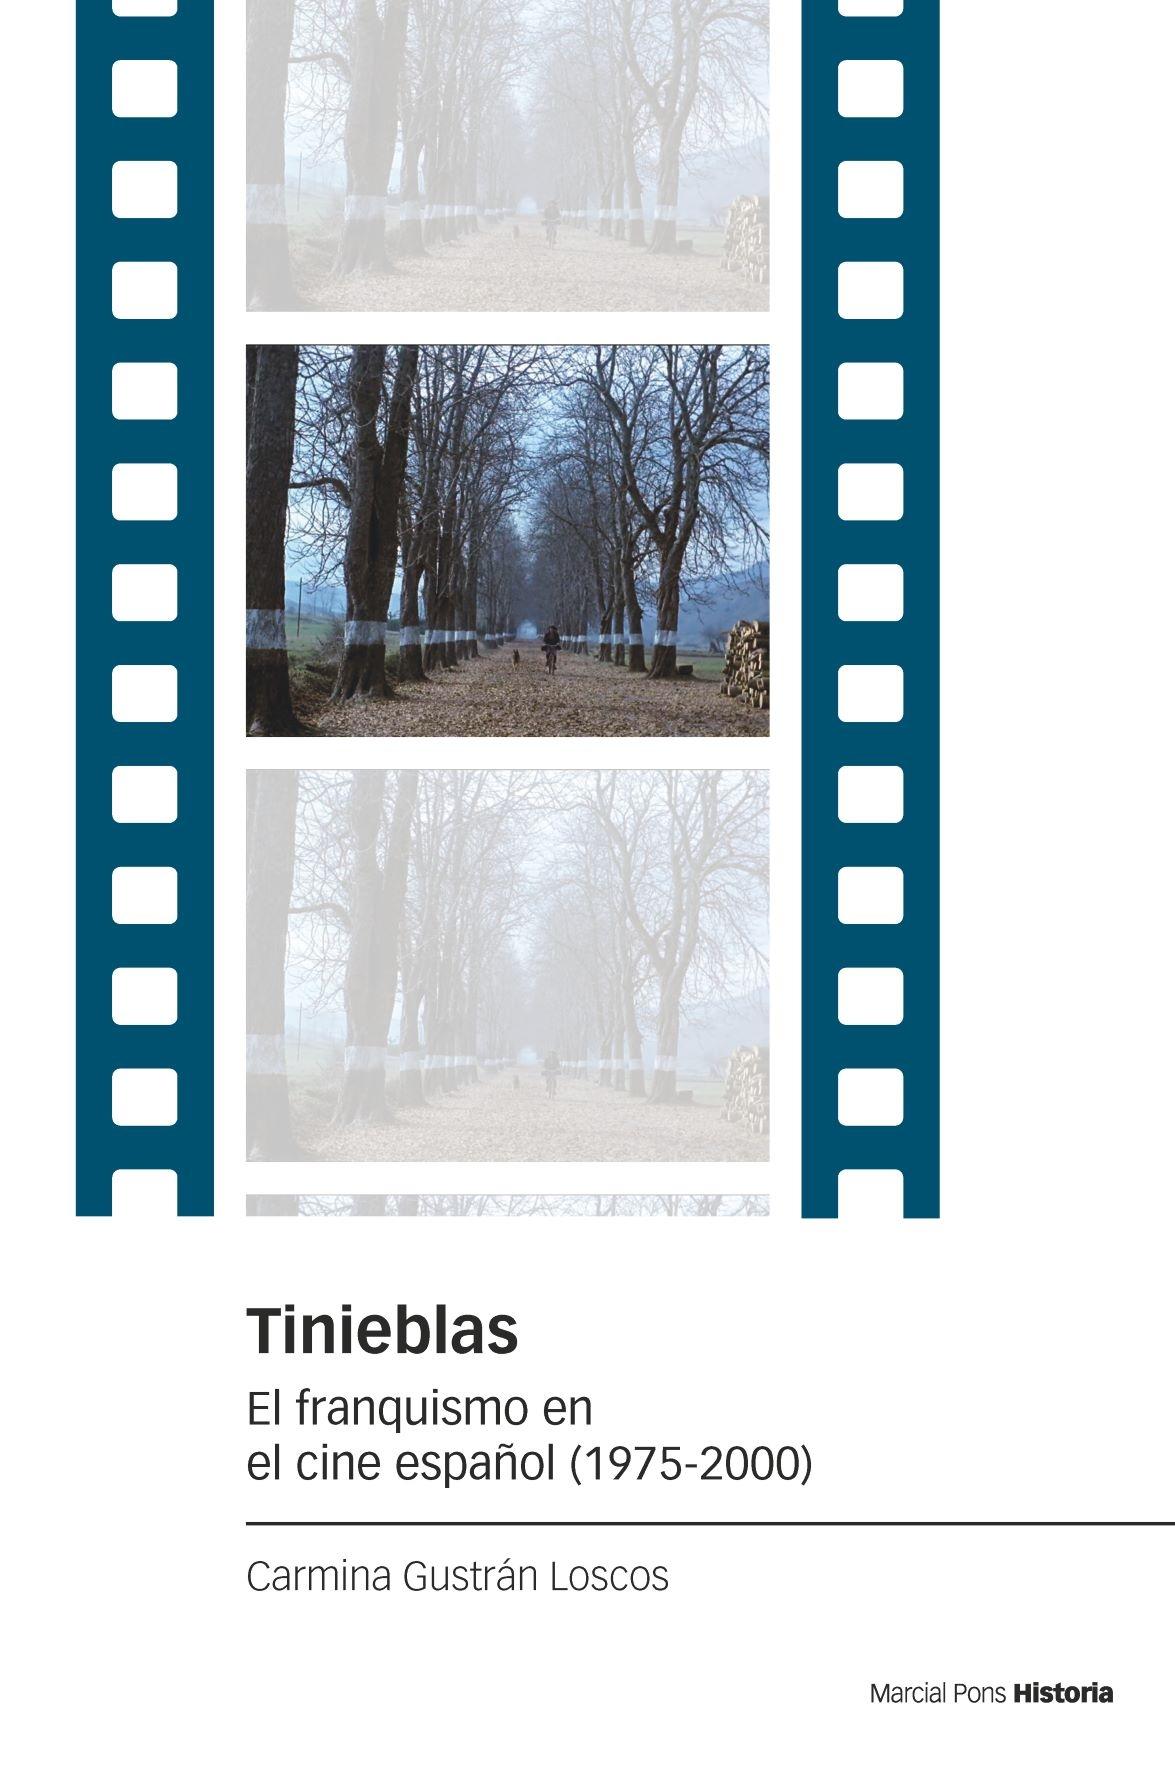 Tinieblas "El franquismo en el cine español (1975-2000)"